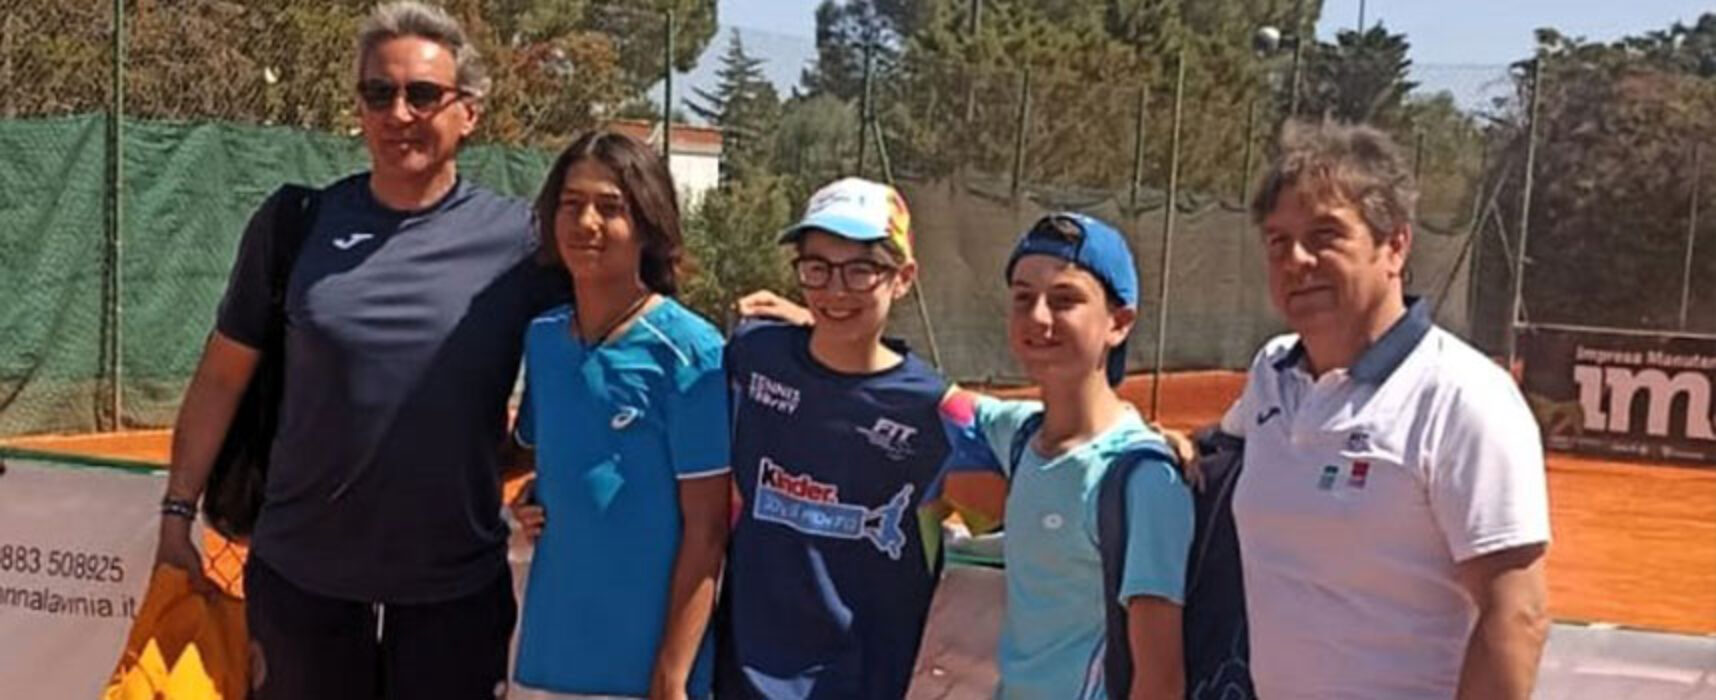 Titolo provinciale per i ragazzi della “Battisti-Ferraris” ai Campionati Studenteschi di Tennis